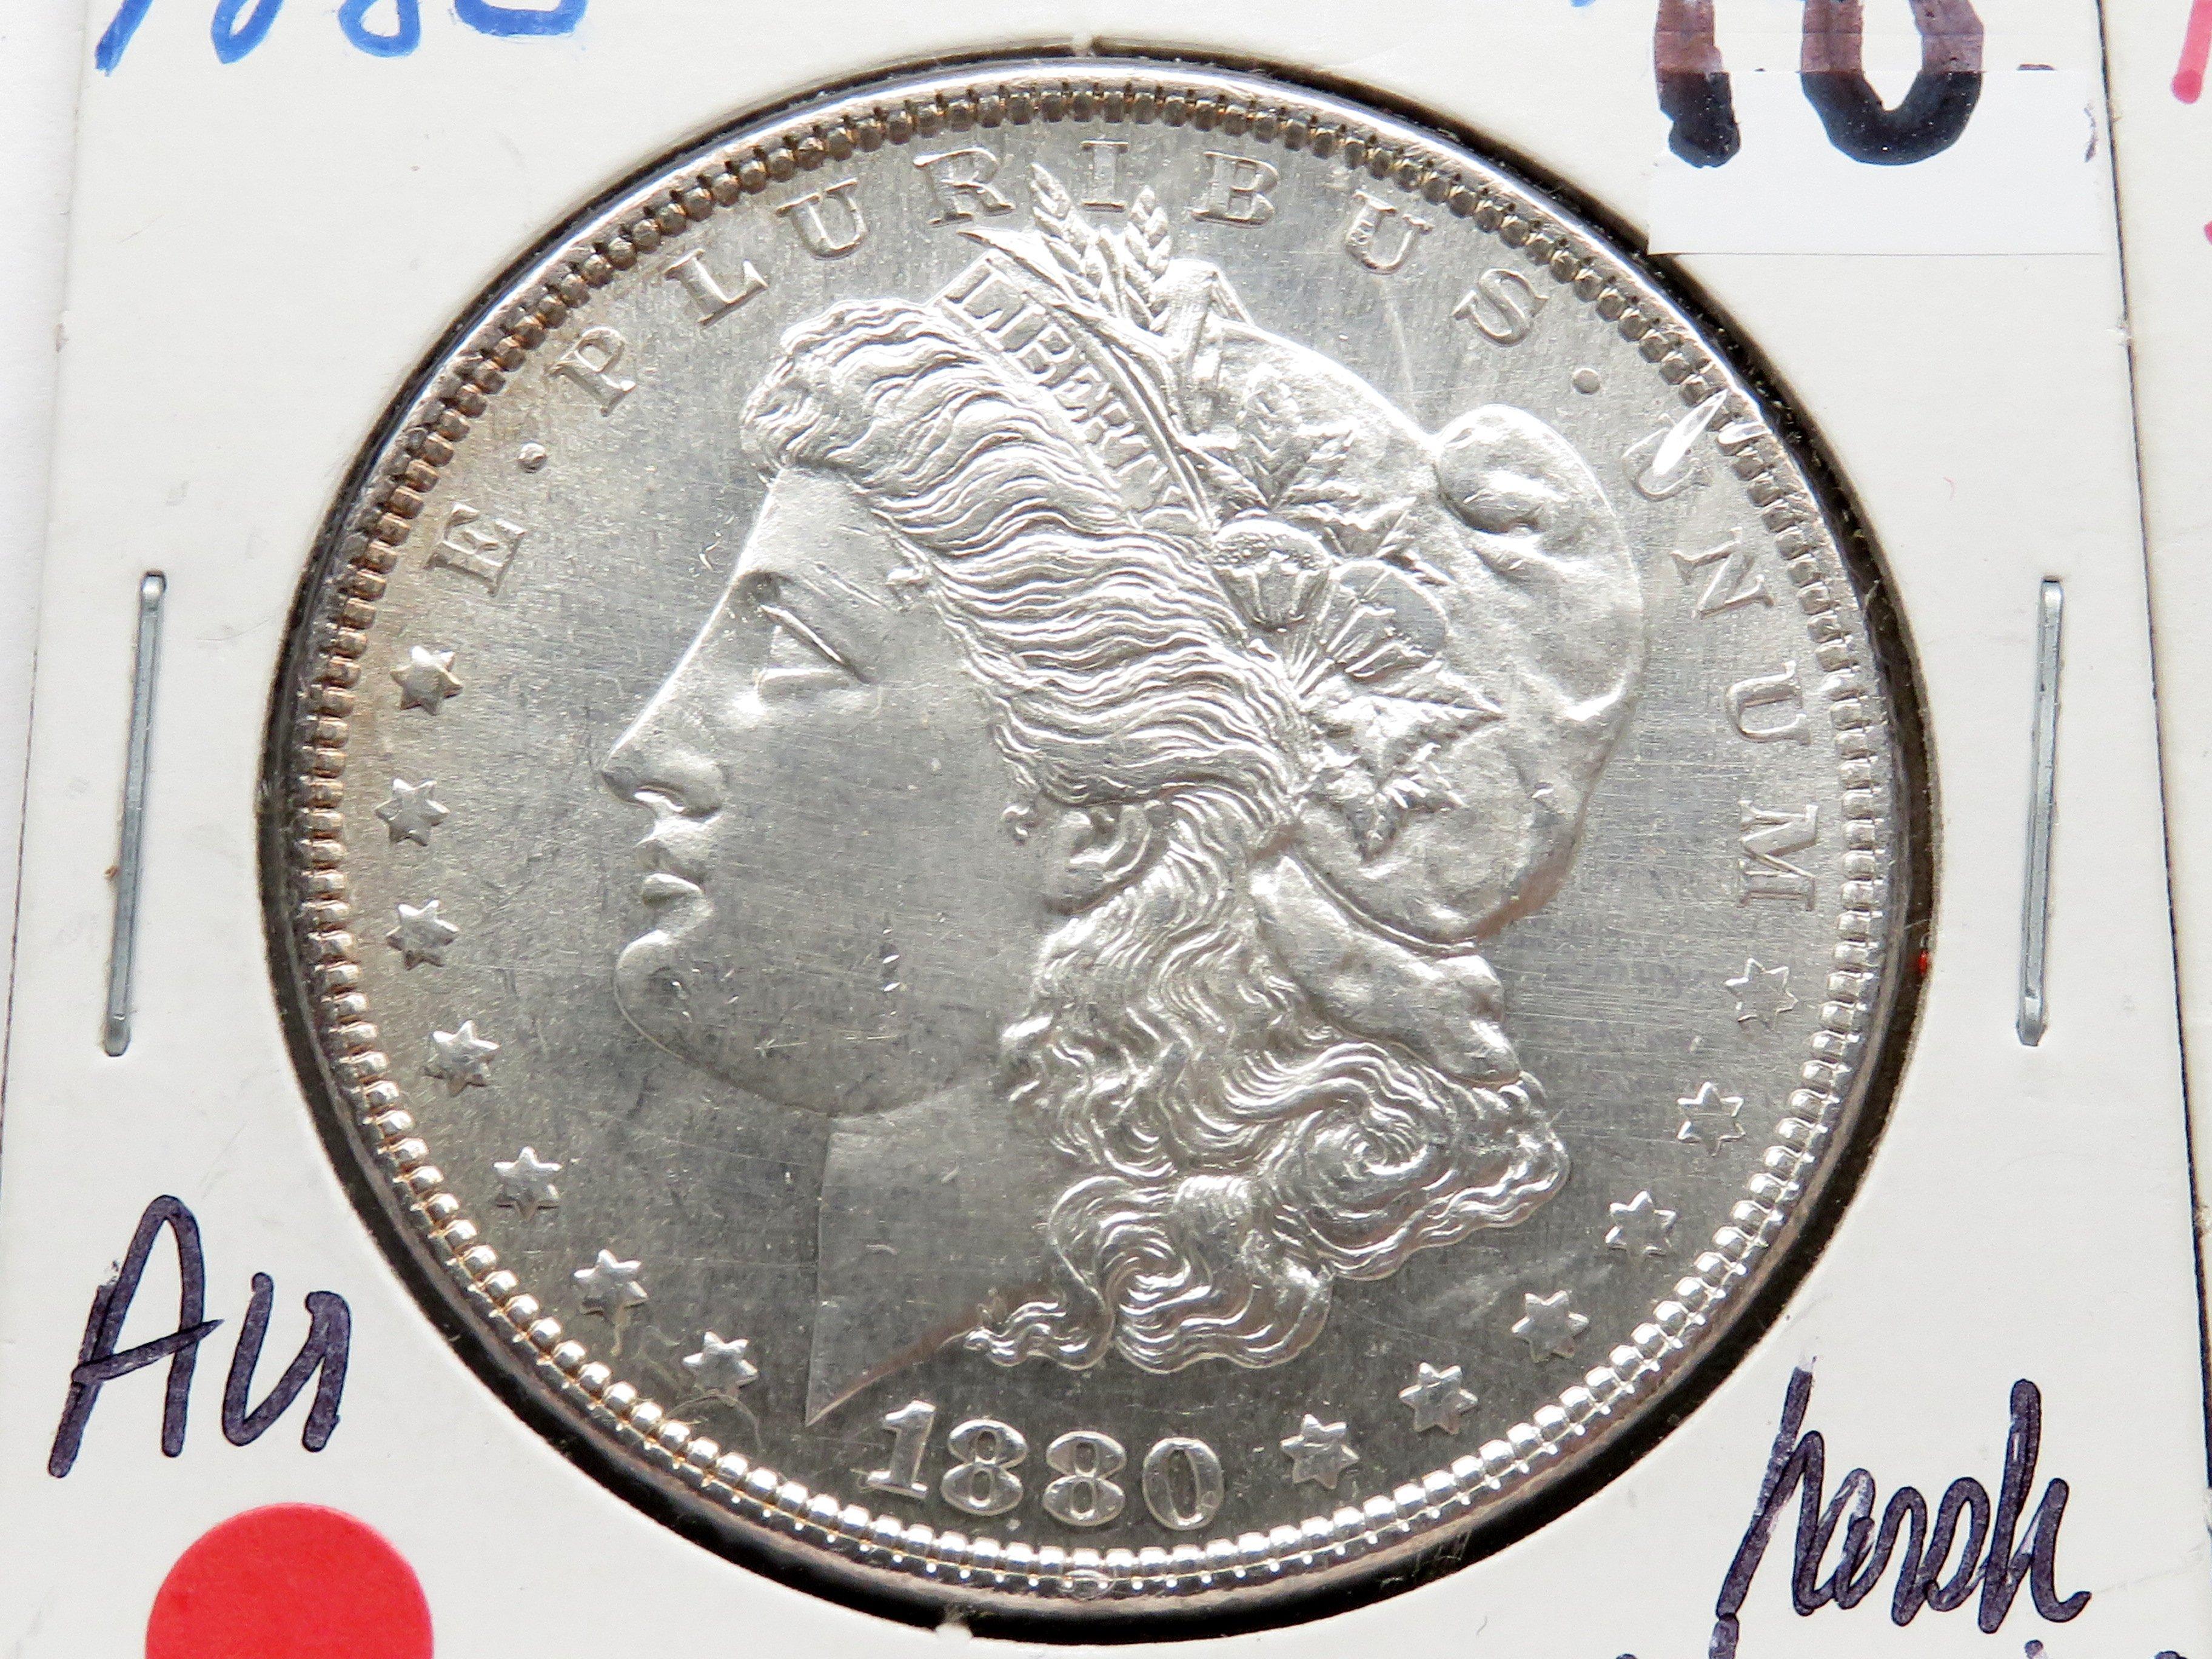 2 Morgan $ : 1880 AU harshly cleaned, 1880S AU cleaned